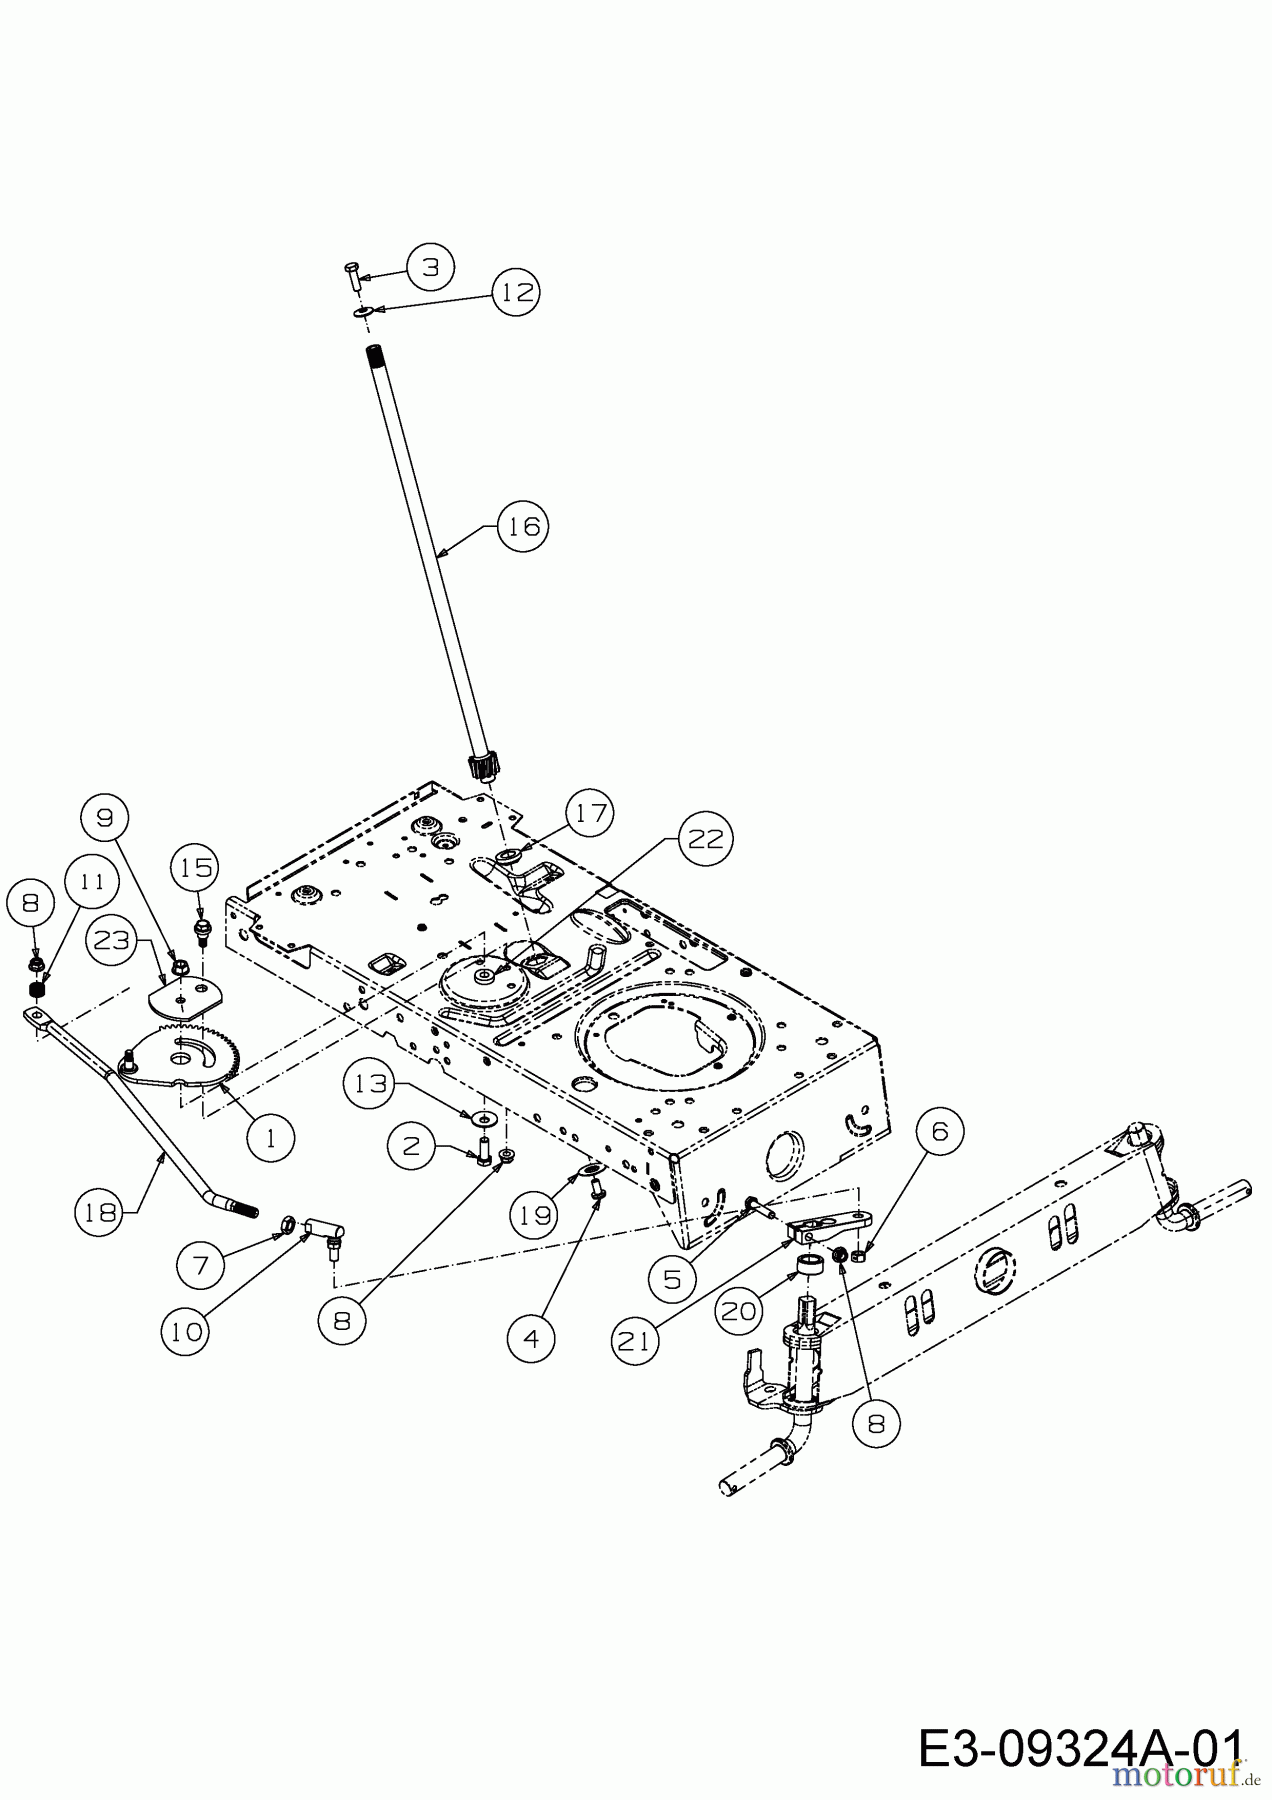  Wolf-Garten Lawn tractors E 13/92 T 13I2765E650  (2018) Steering